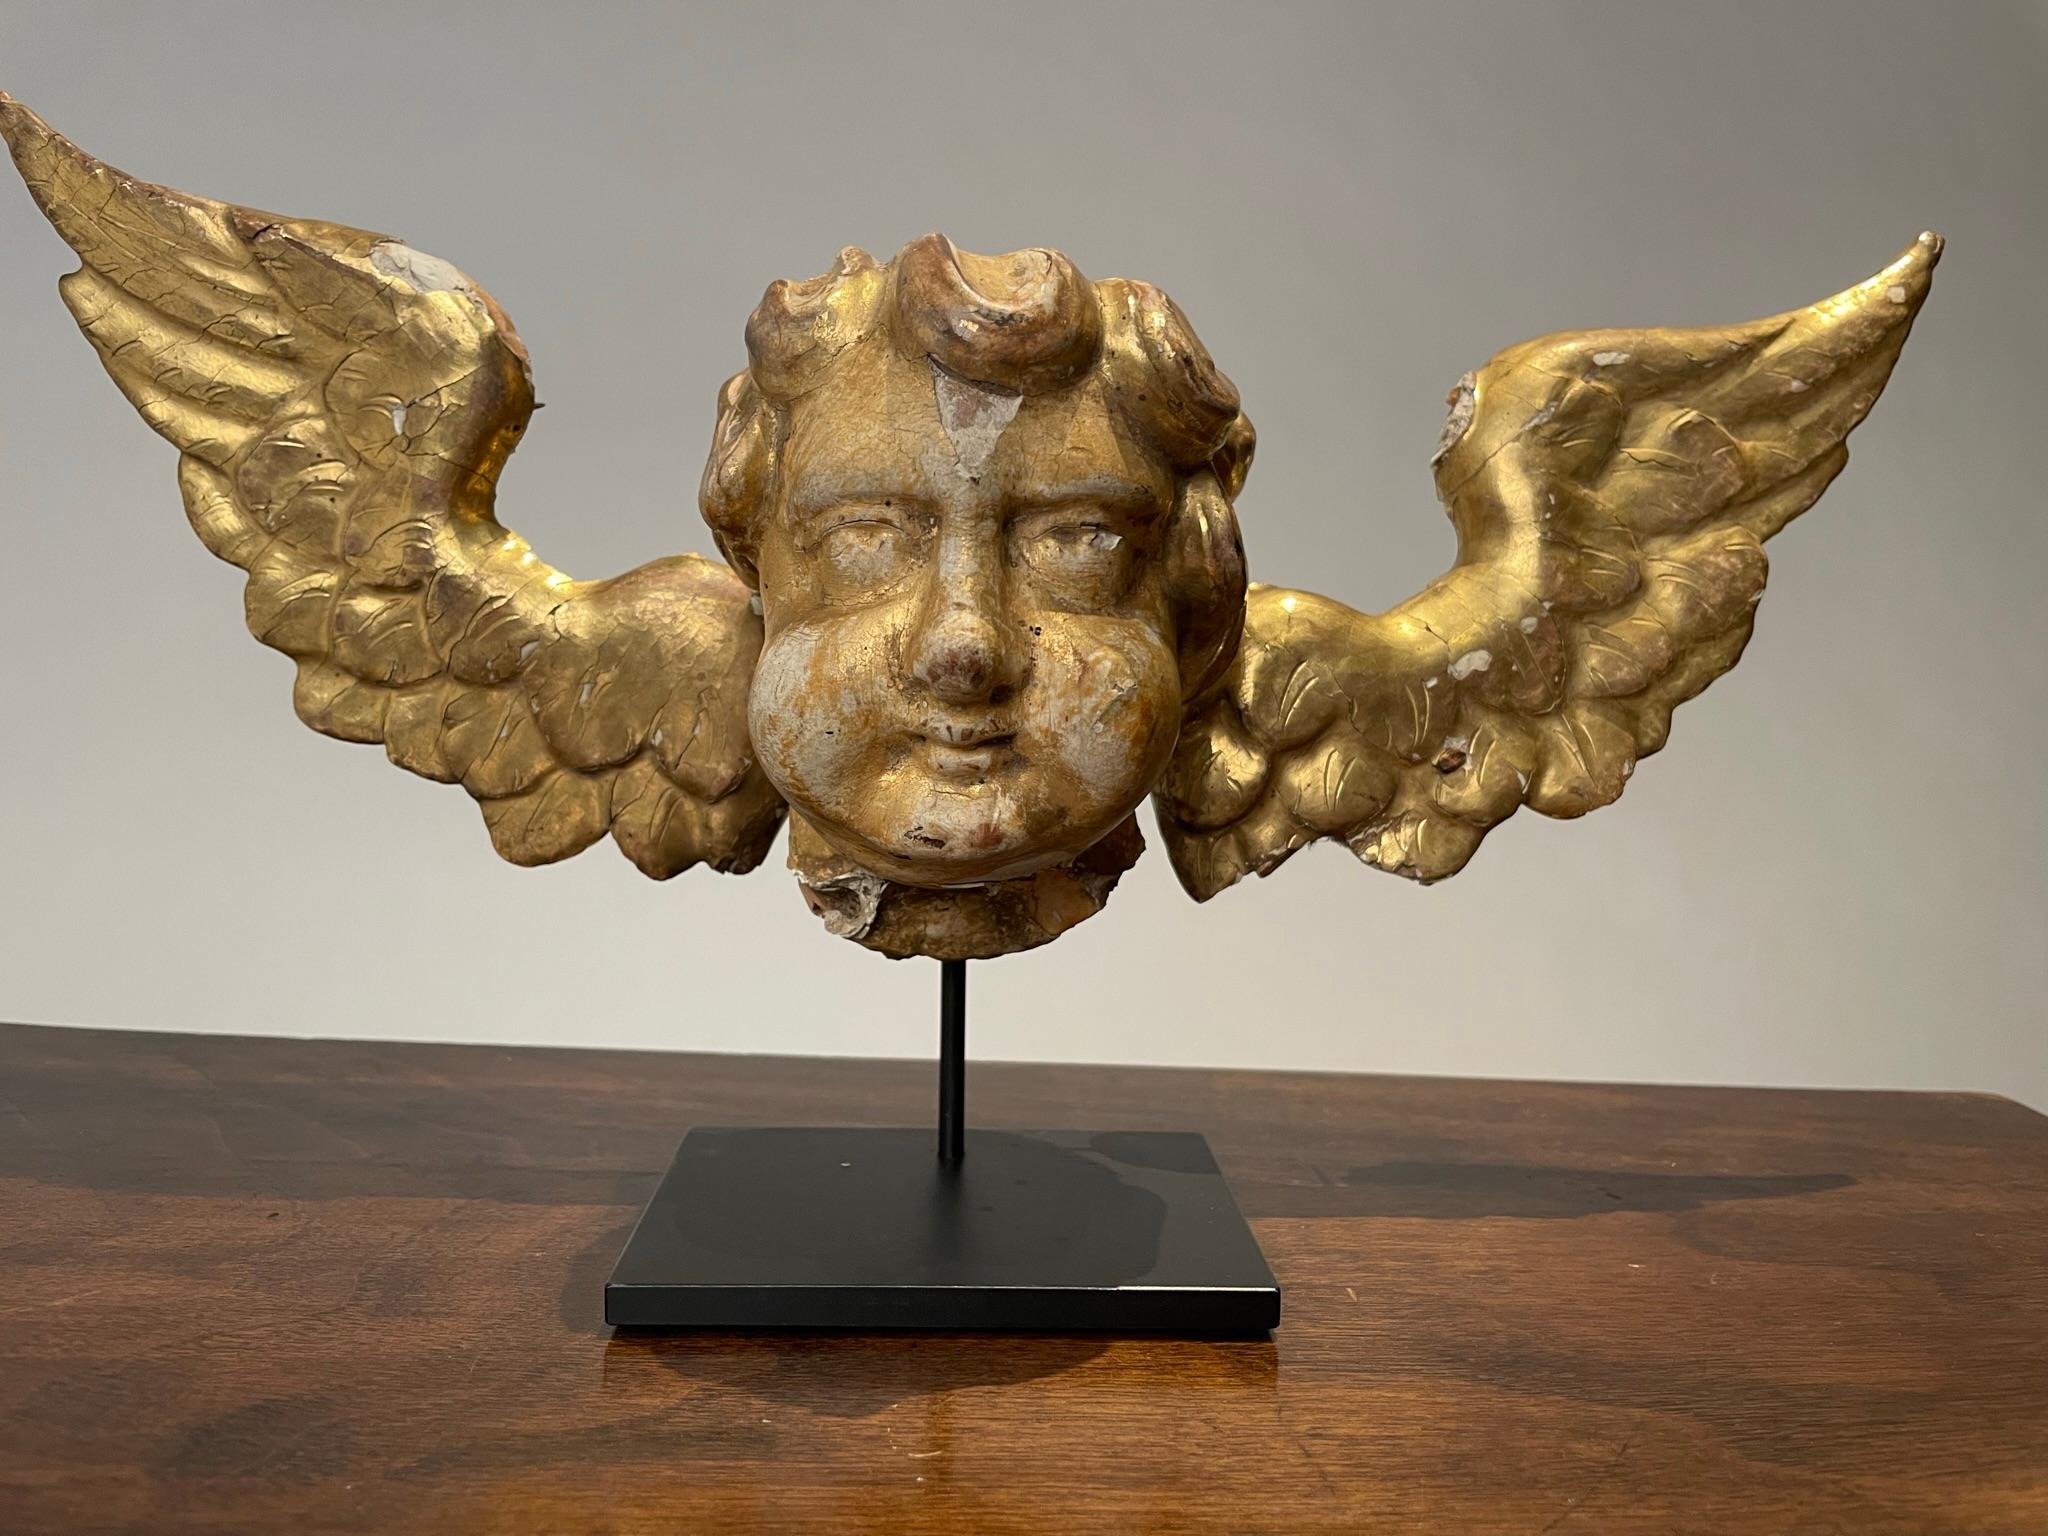 Charmant putto italien du XVIIIe siècle en bois doré avec des ailes, monté sur une base en acier noir. Probablement partie d'un panneau en relief à l'origine, avec les anciens clous forgés à la main encore visibles au dos. Whiting surface, le blanc